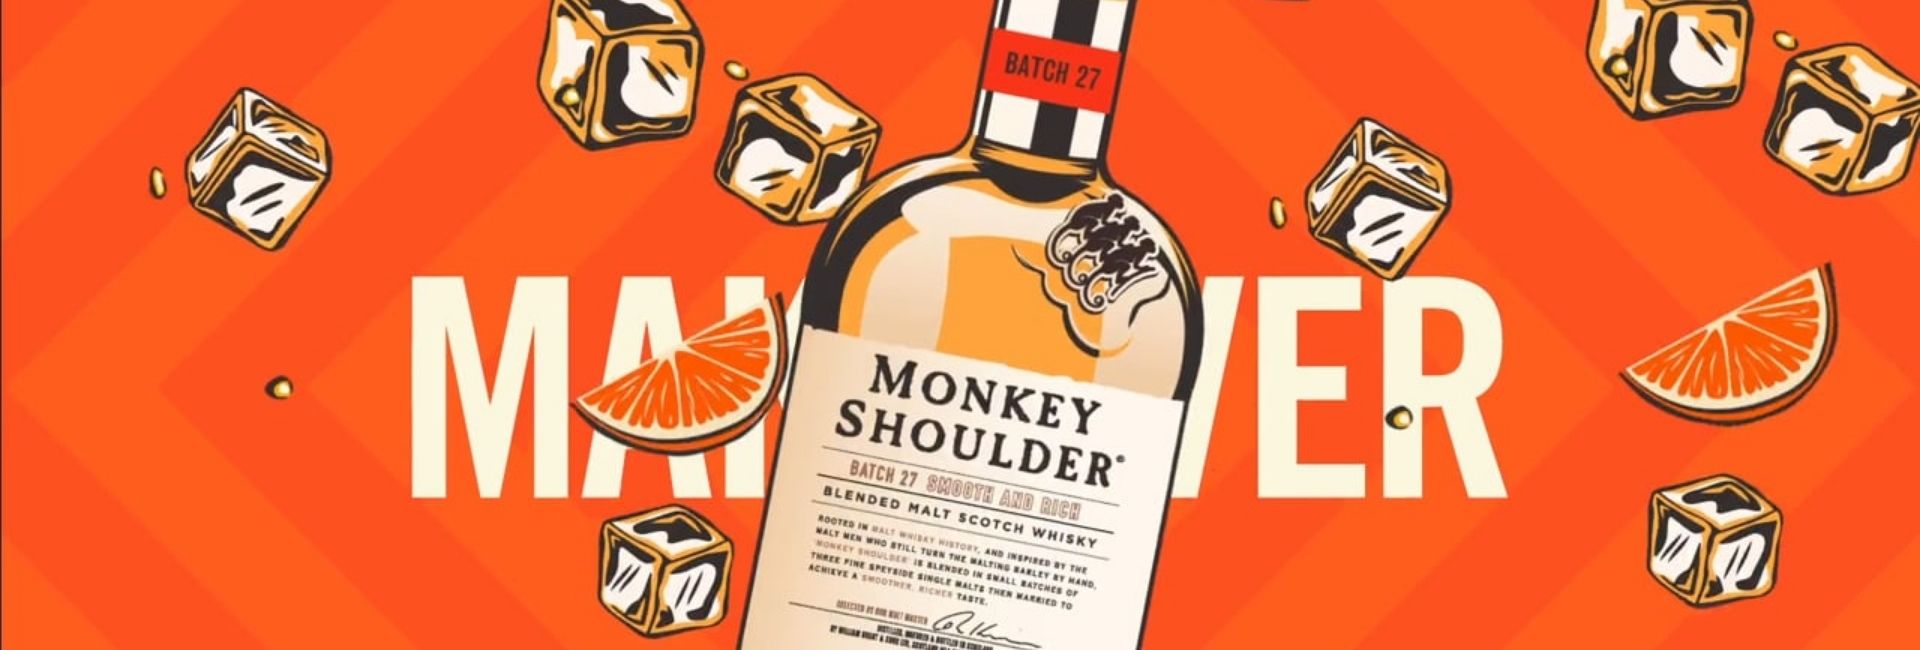 Monkey Shoulder Blended Malt Scotch Whisky review